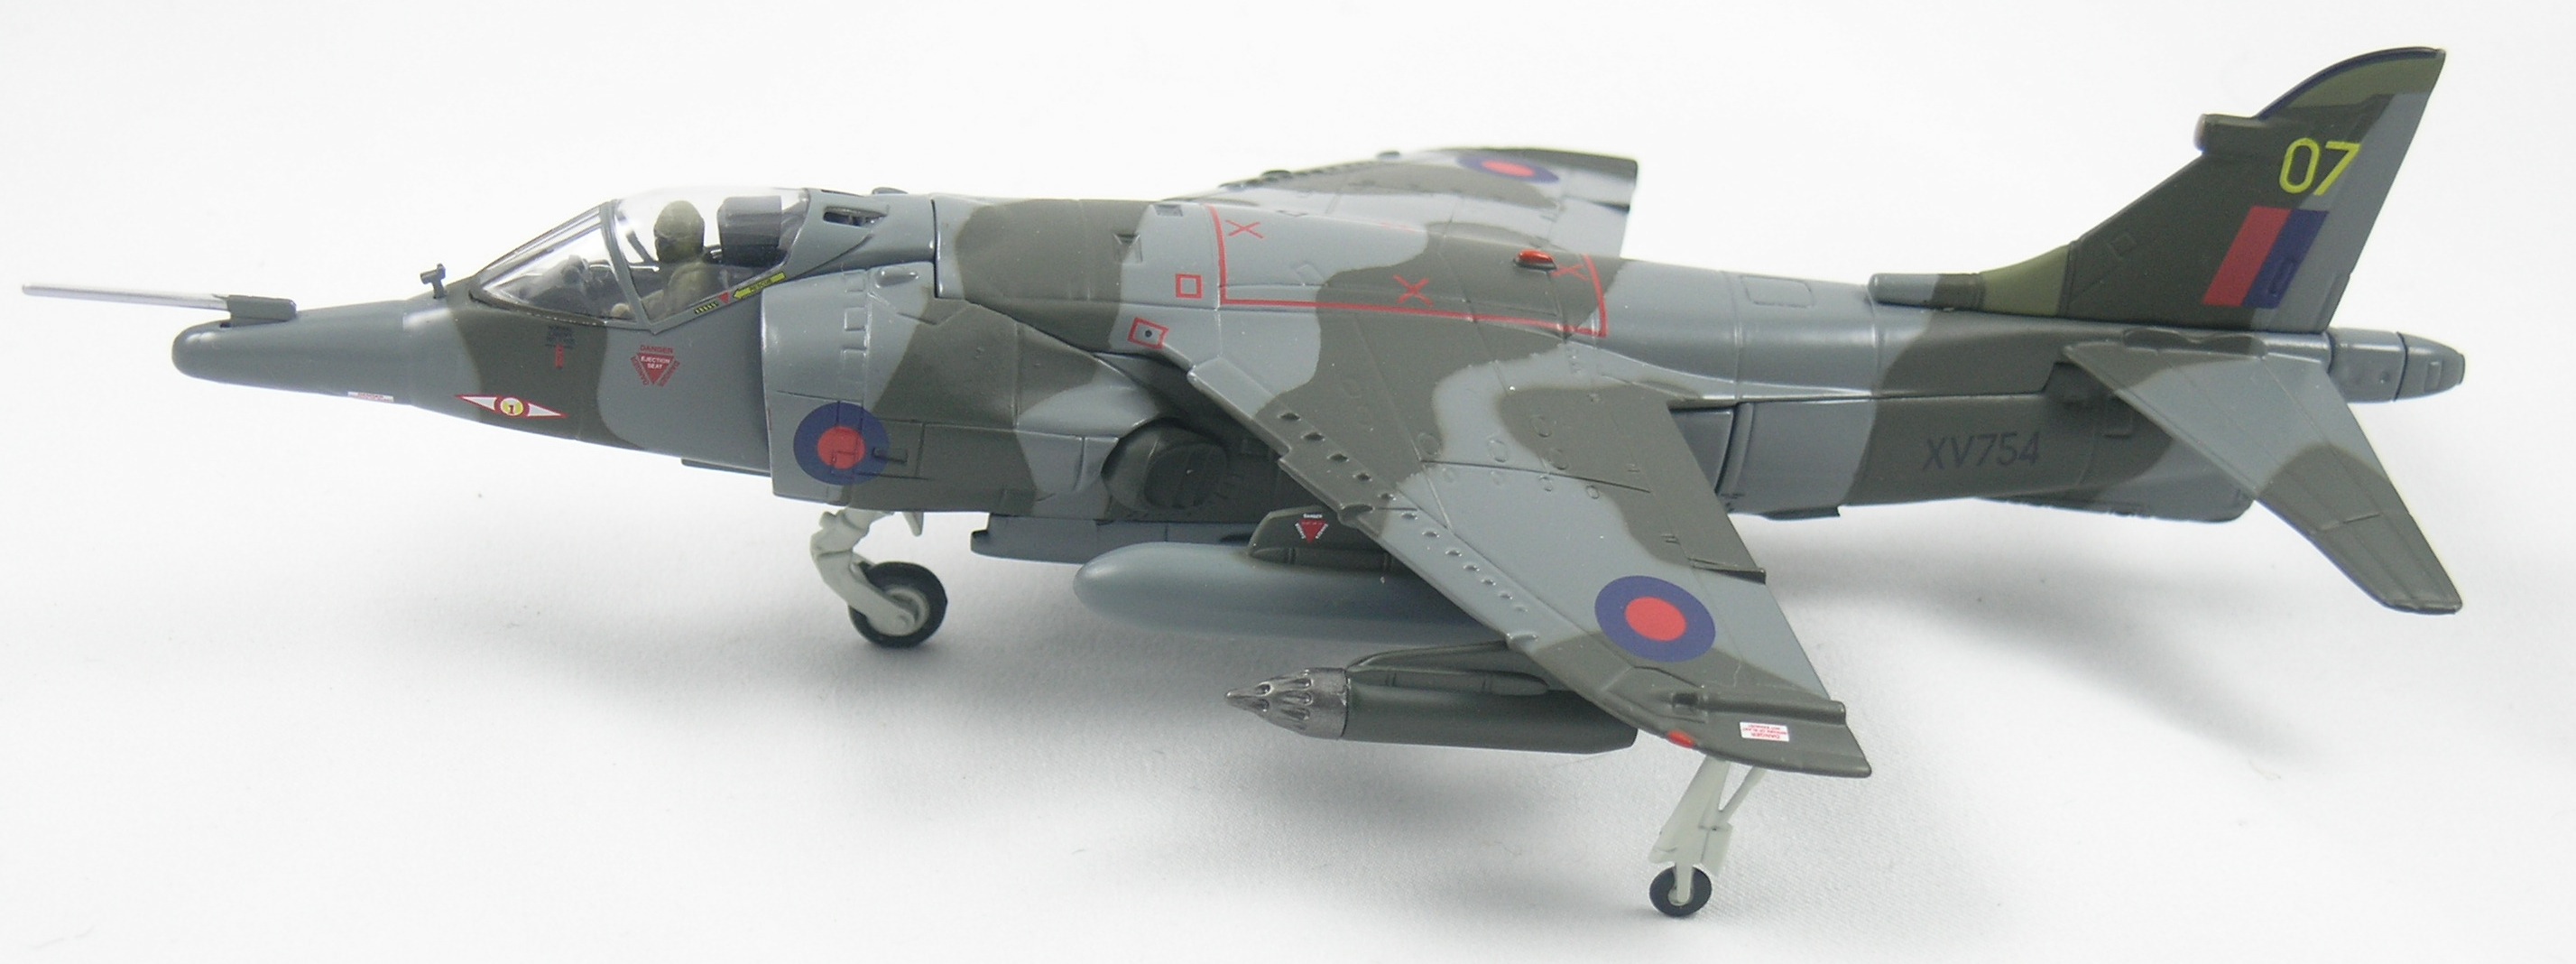 Harrier-AA32411-Top